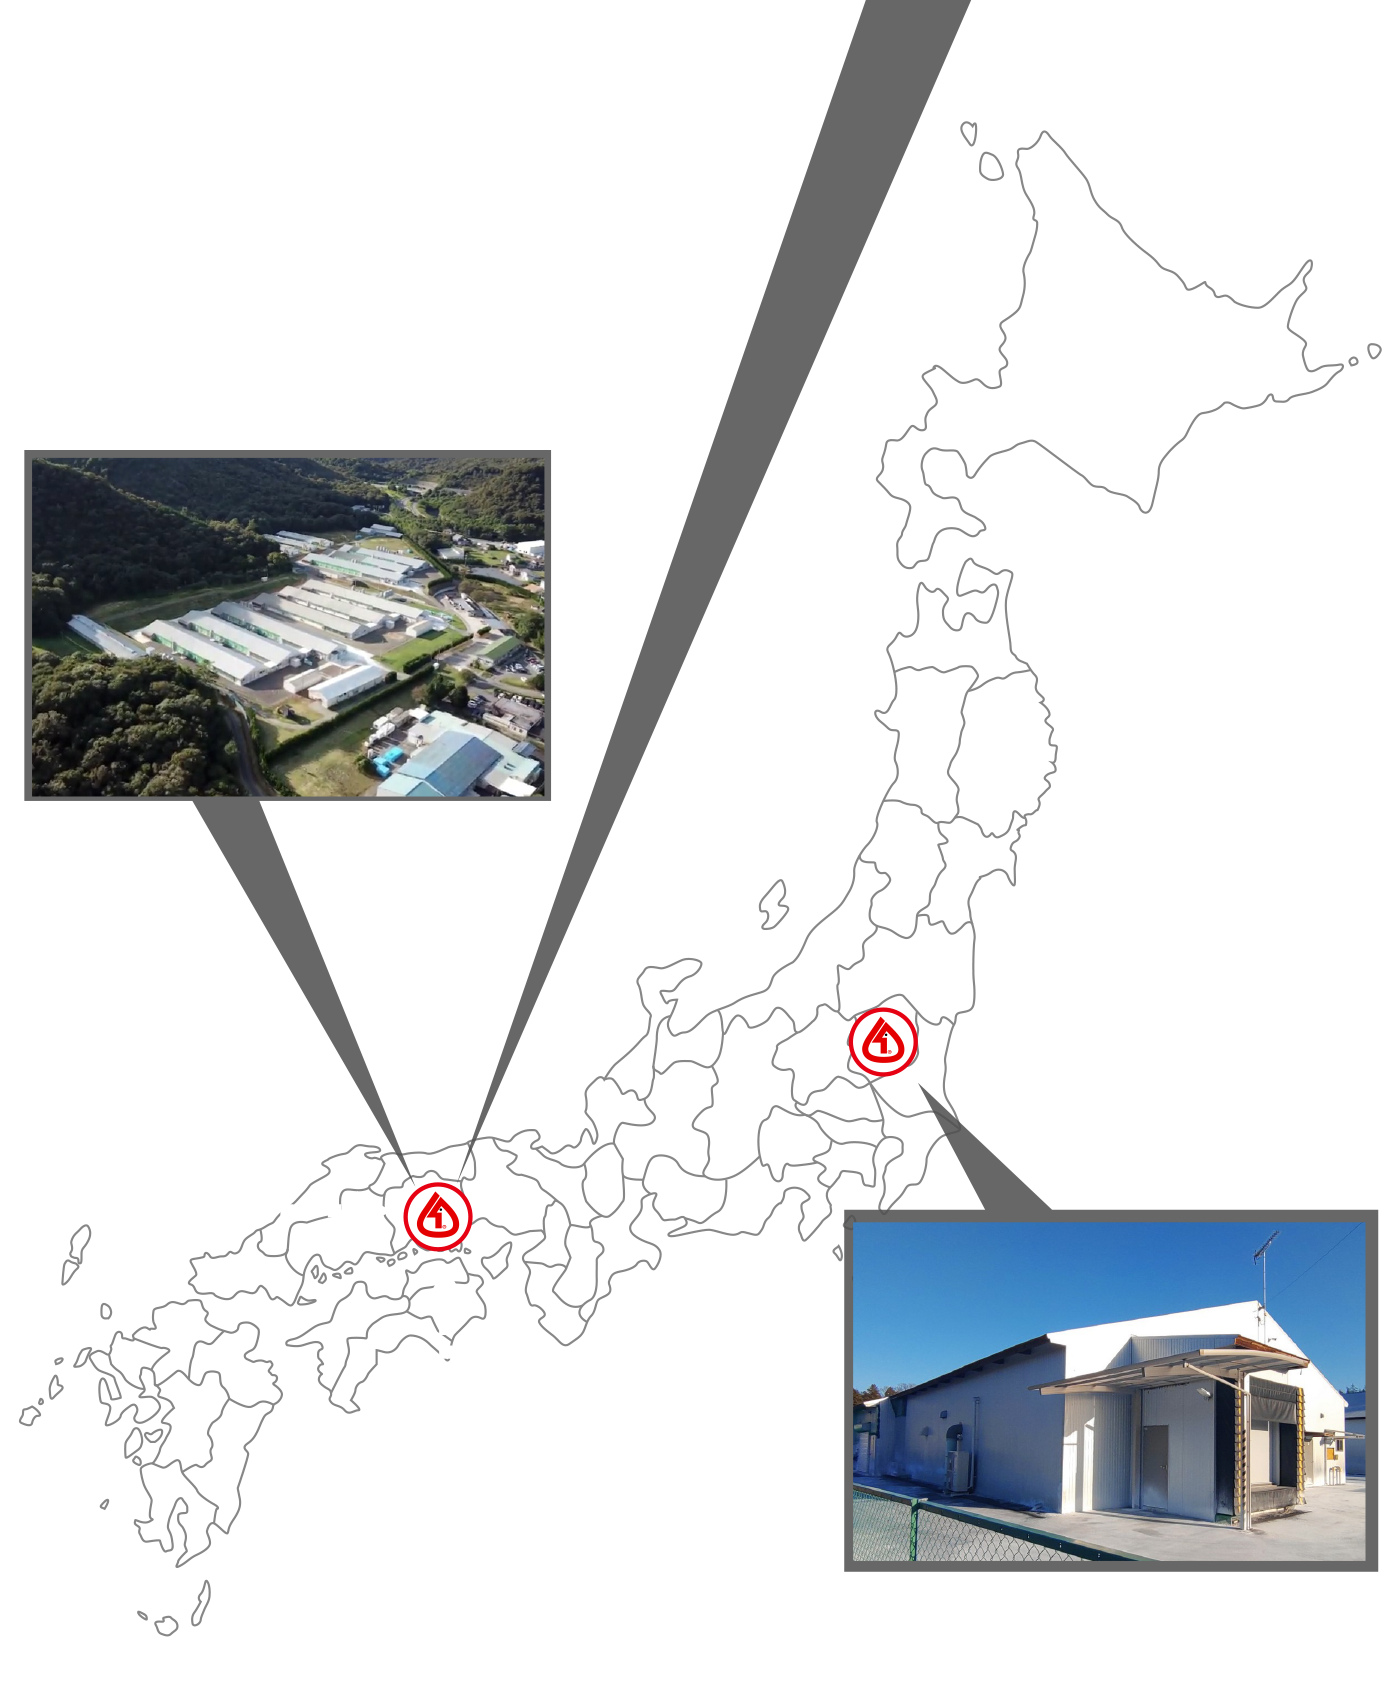 瀬戸内孵化場、岡山腹種鶏場、栃木現種鶏場の位置を示す日本地図